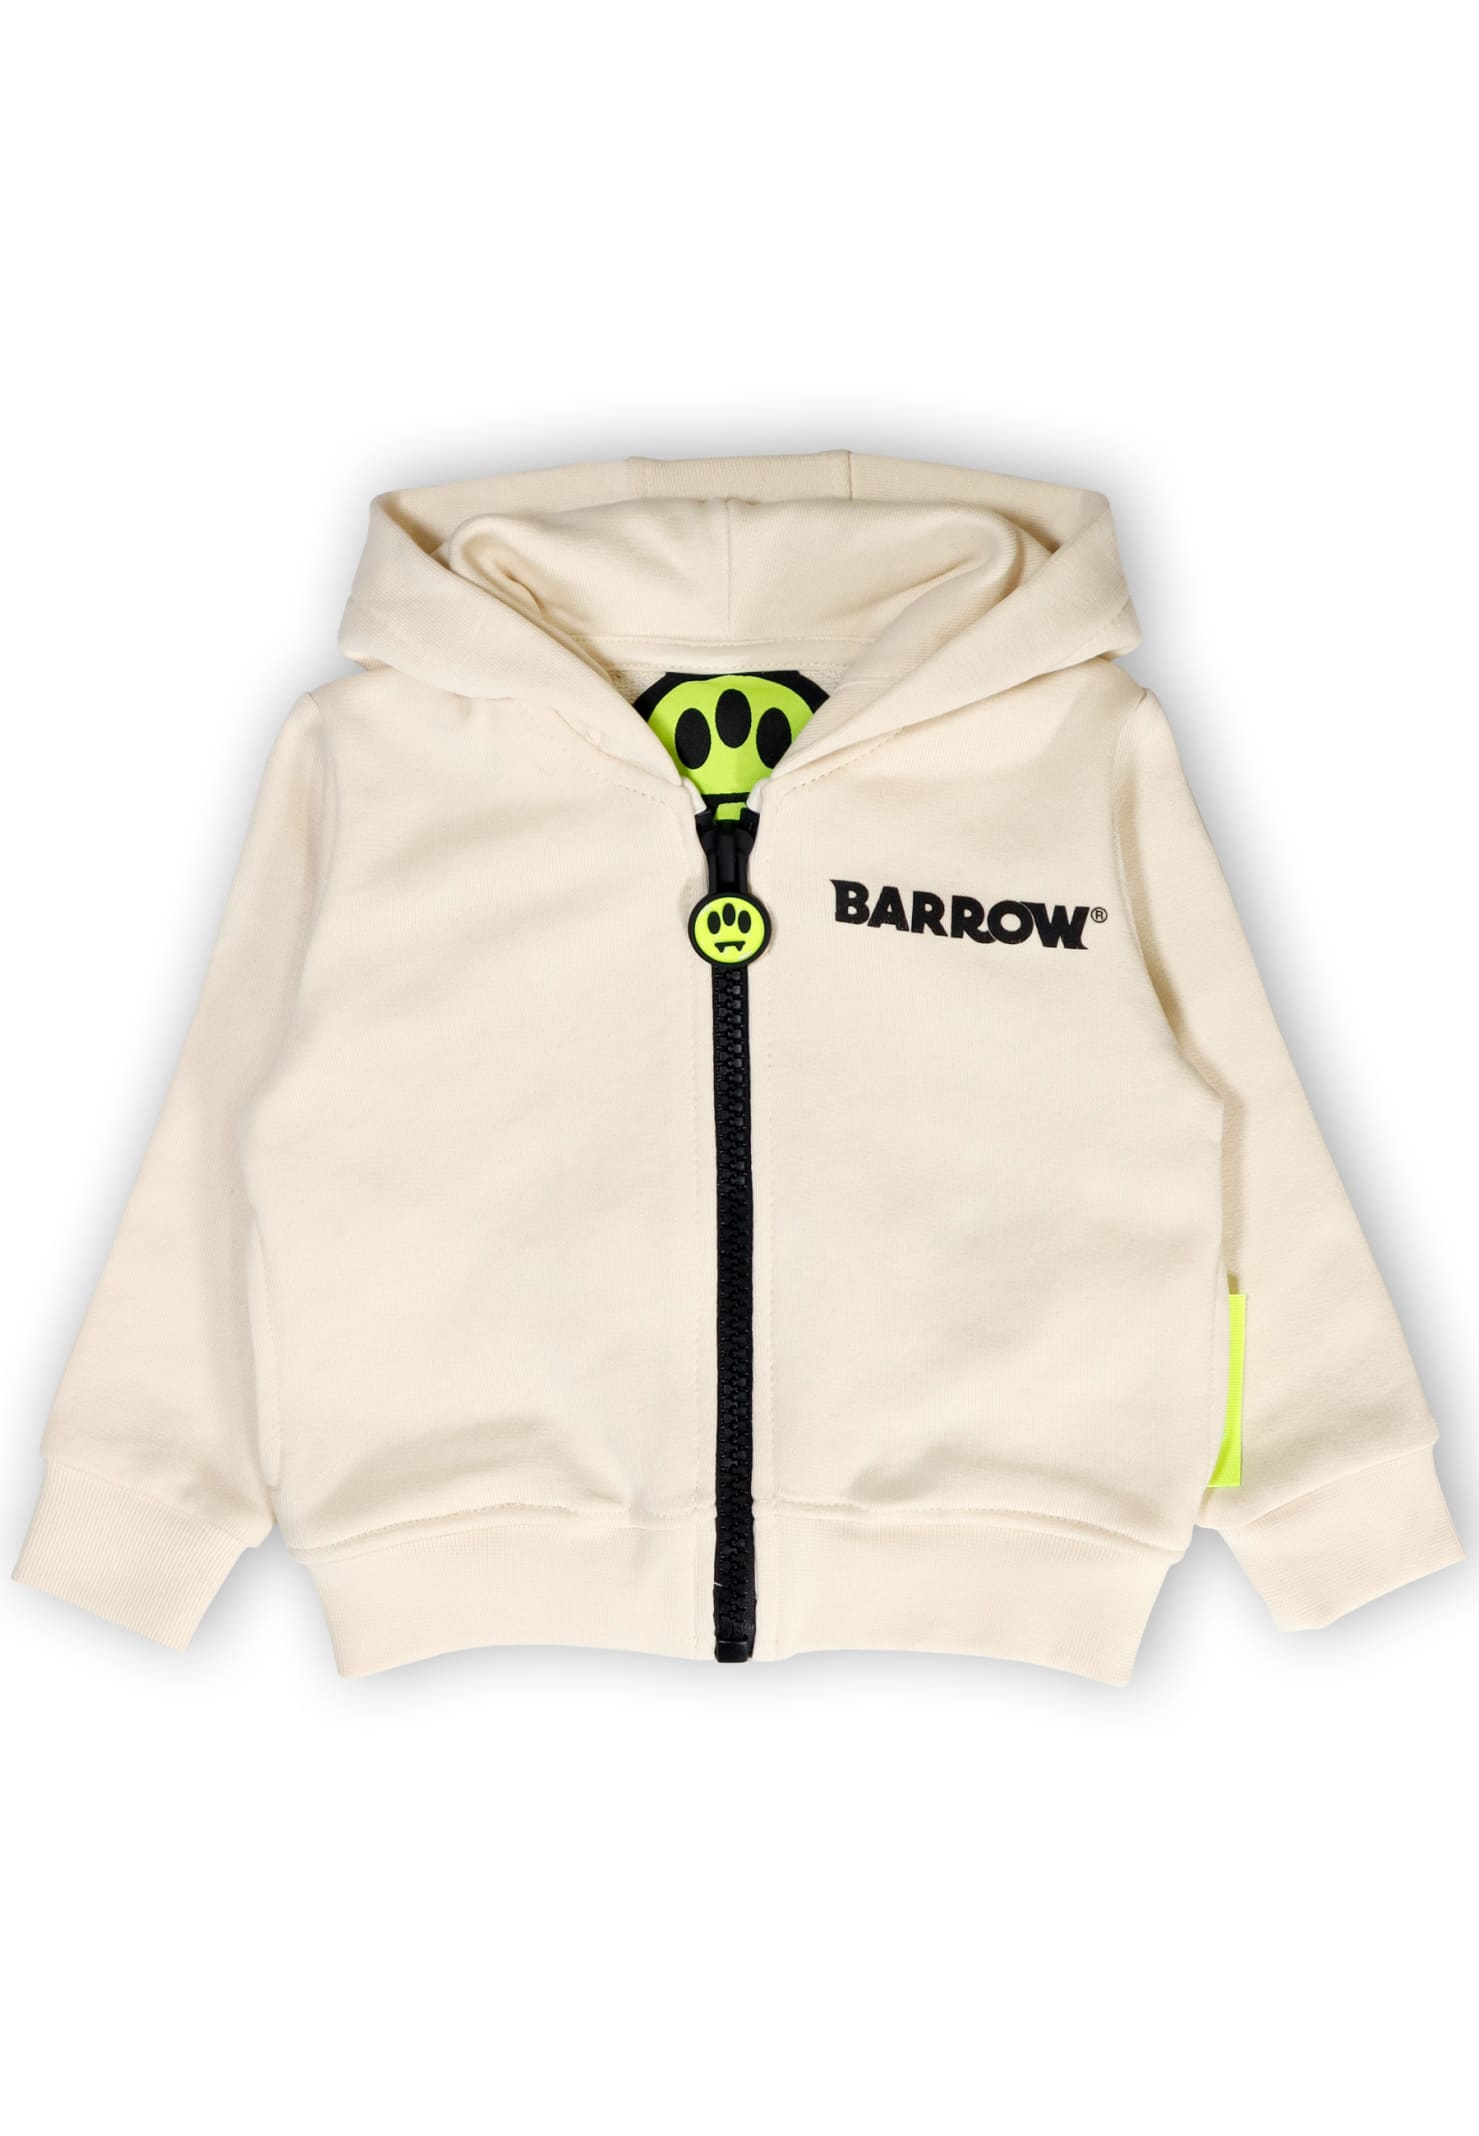 Barrow Babies' Sweatshirt With Zip And Hood In Cream